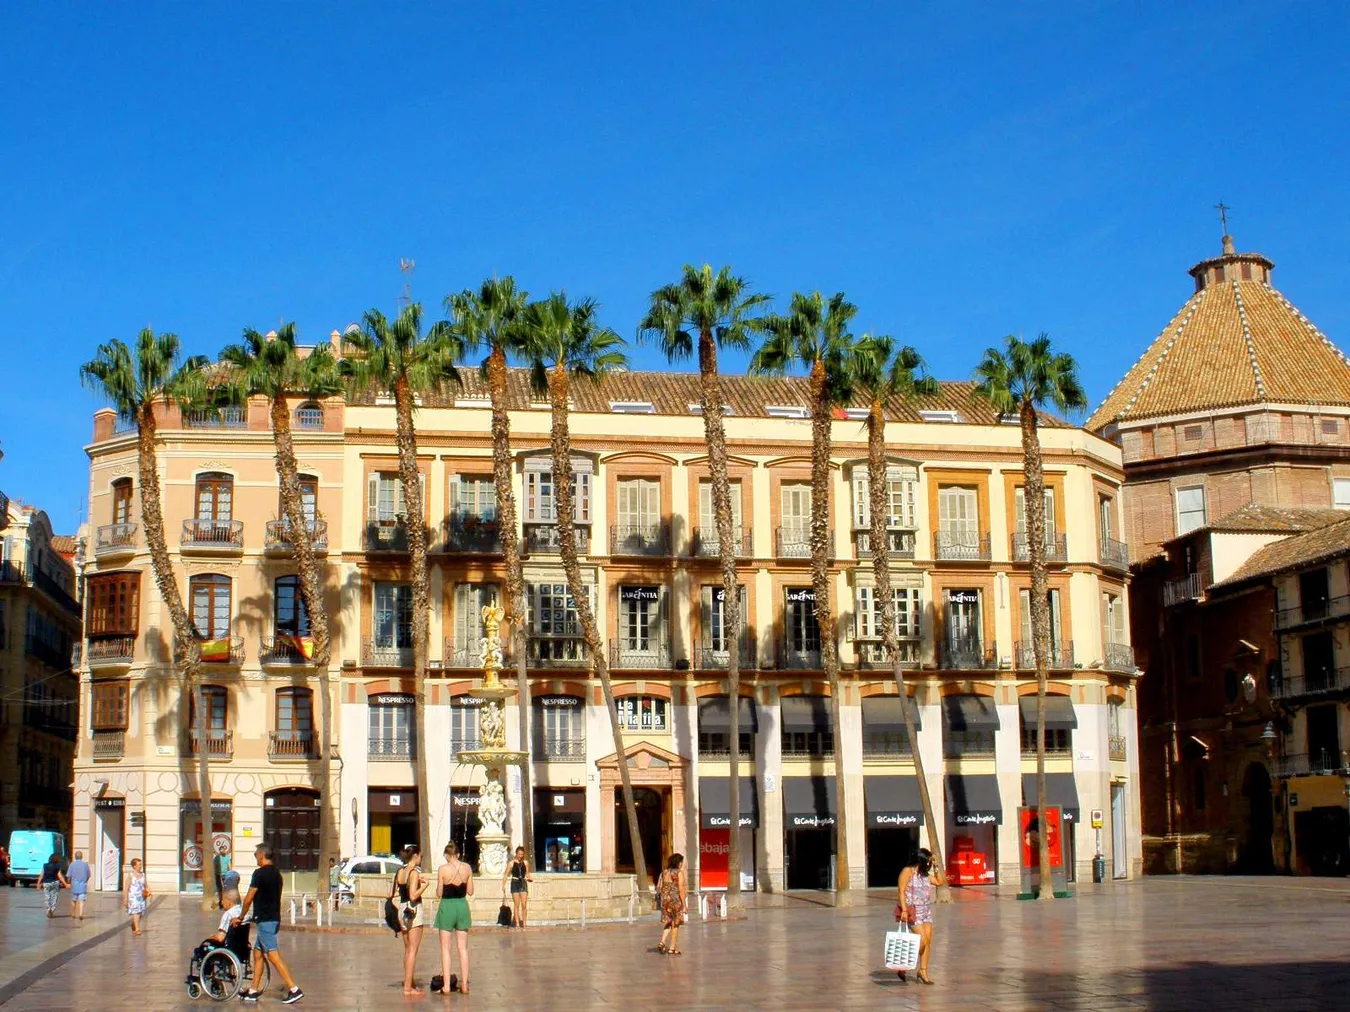 La fuente de la plaza y las palmeras de fondo frente a uno de los edificios neoclásicos del centro de la ciudad